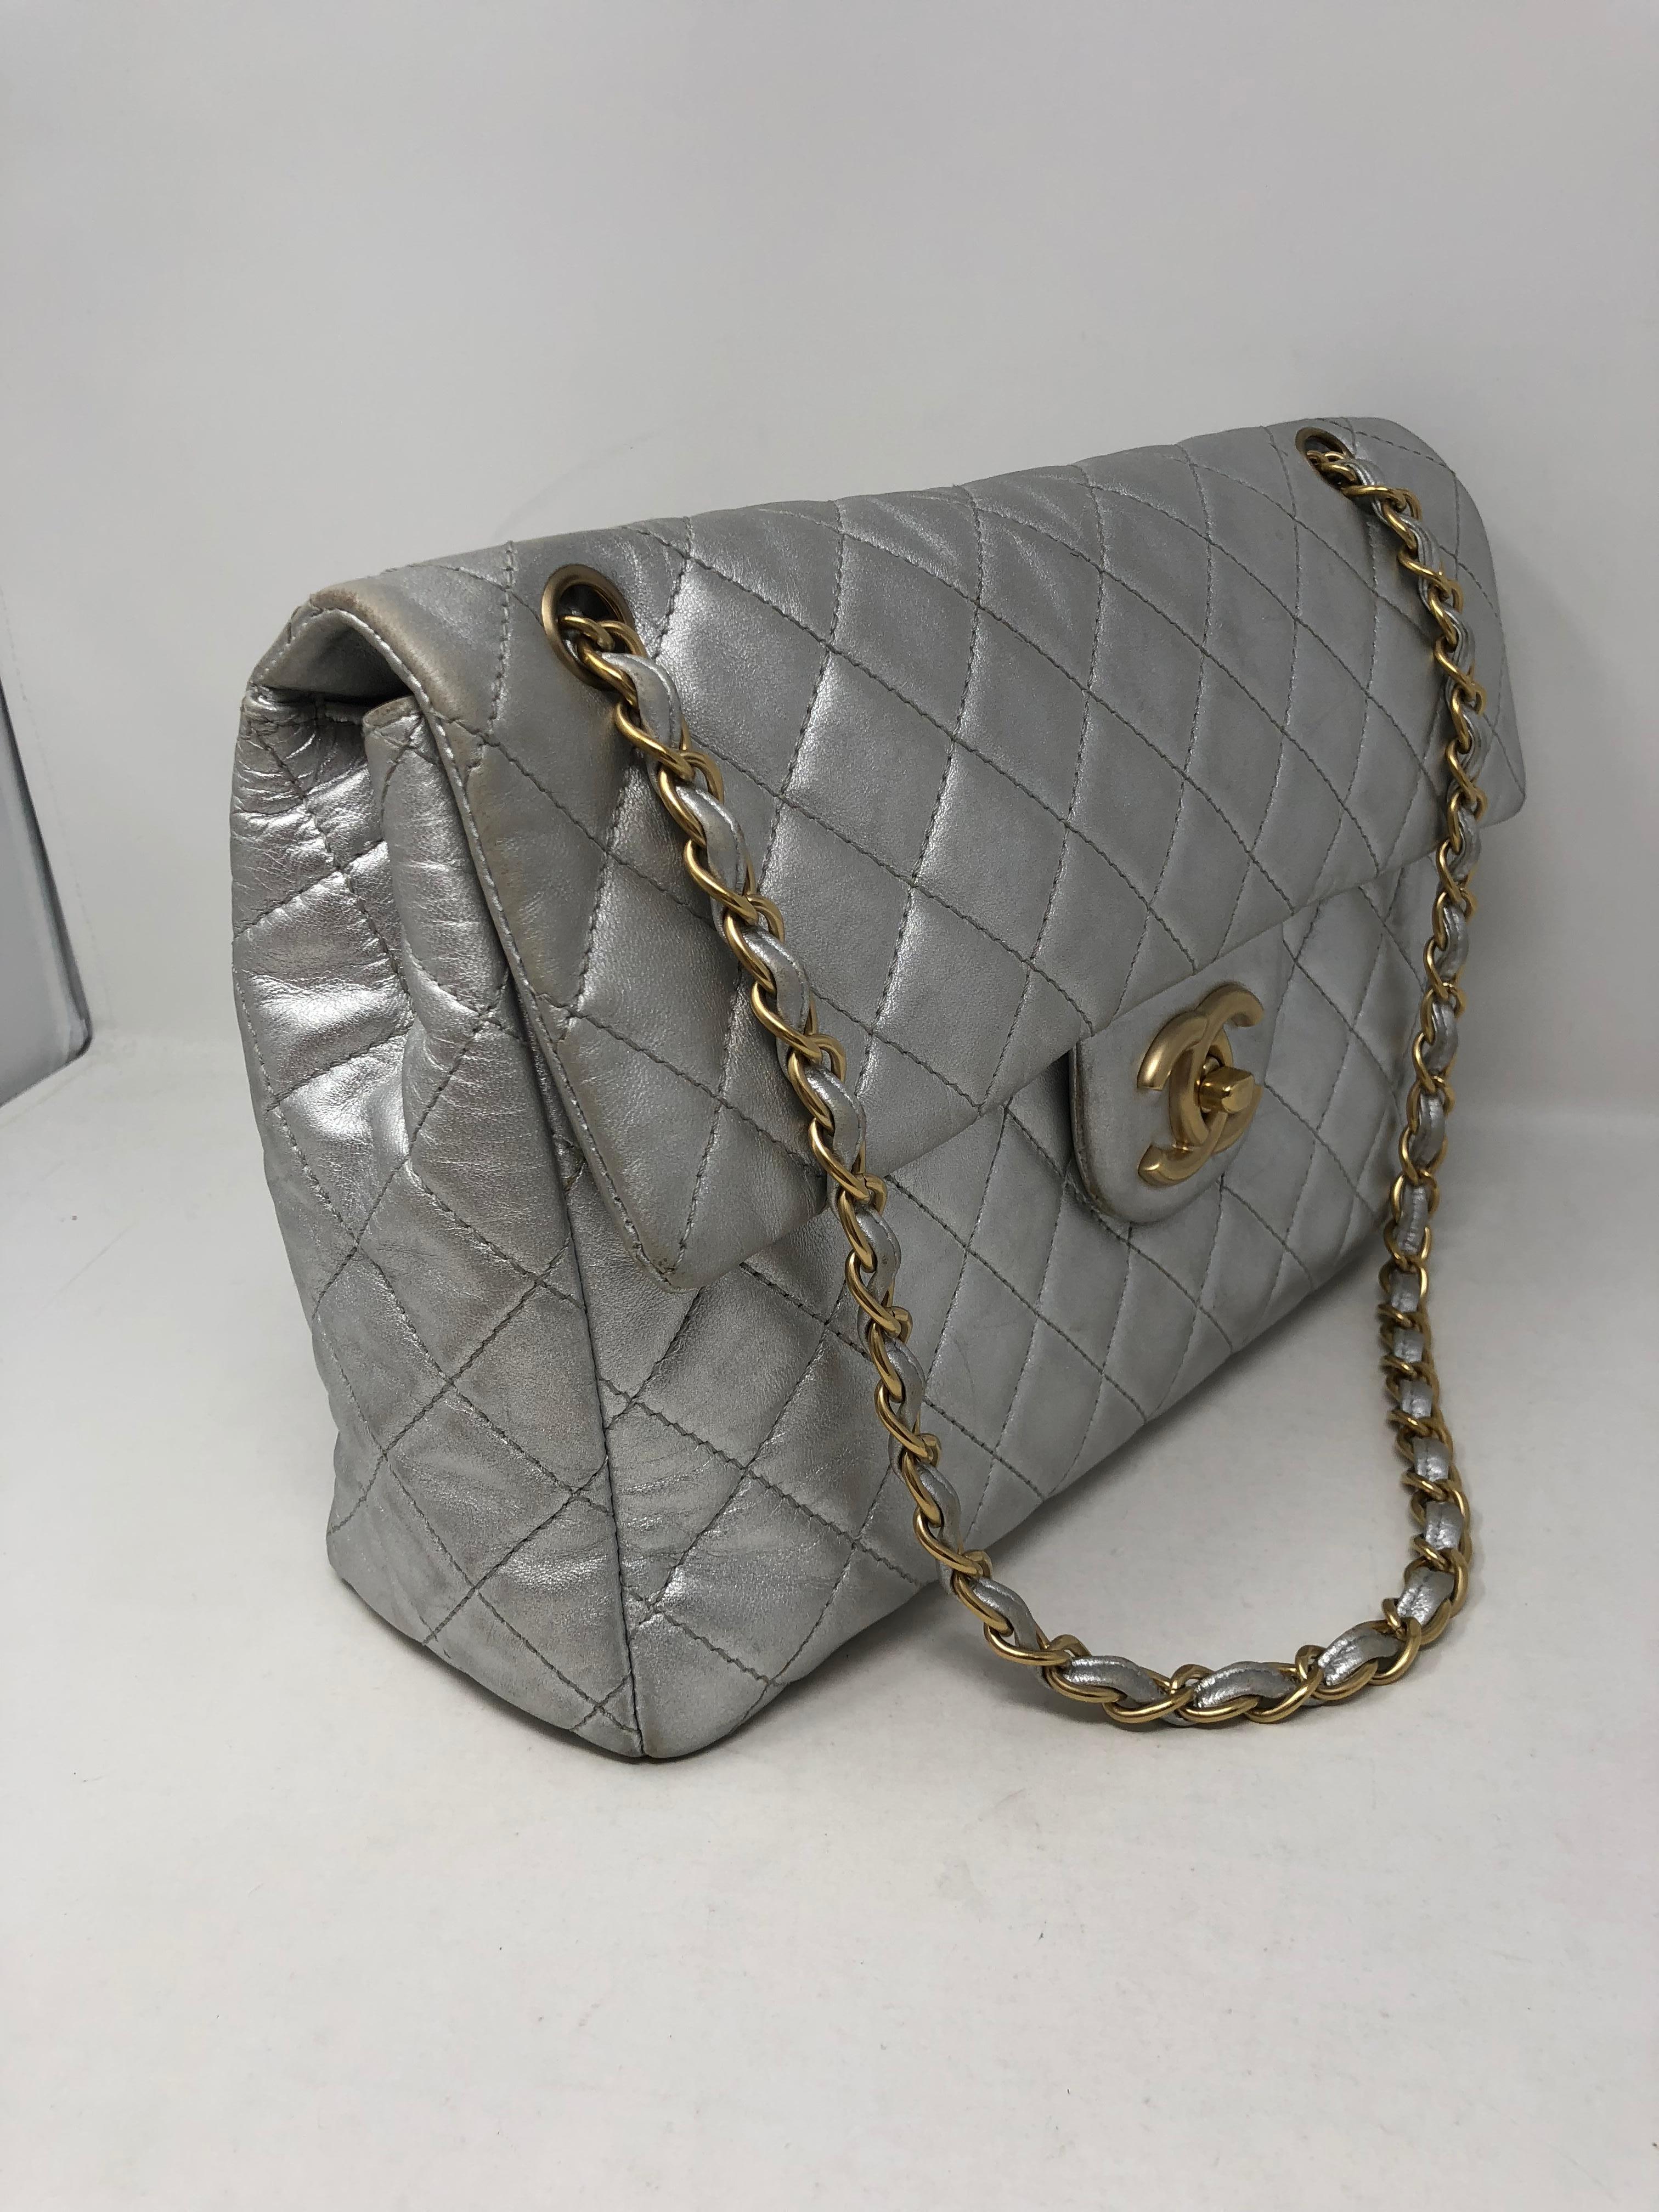 Chanel Silver Metallic Jumbo Bag 8